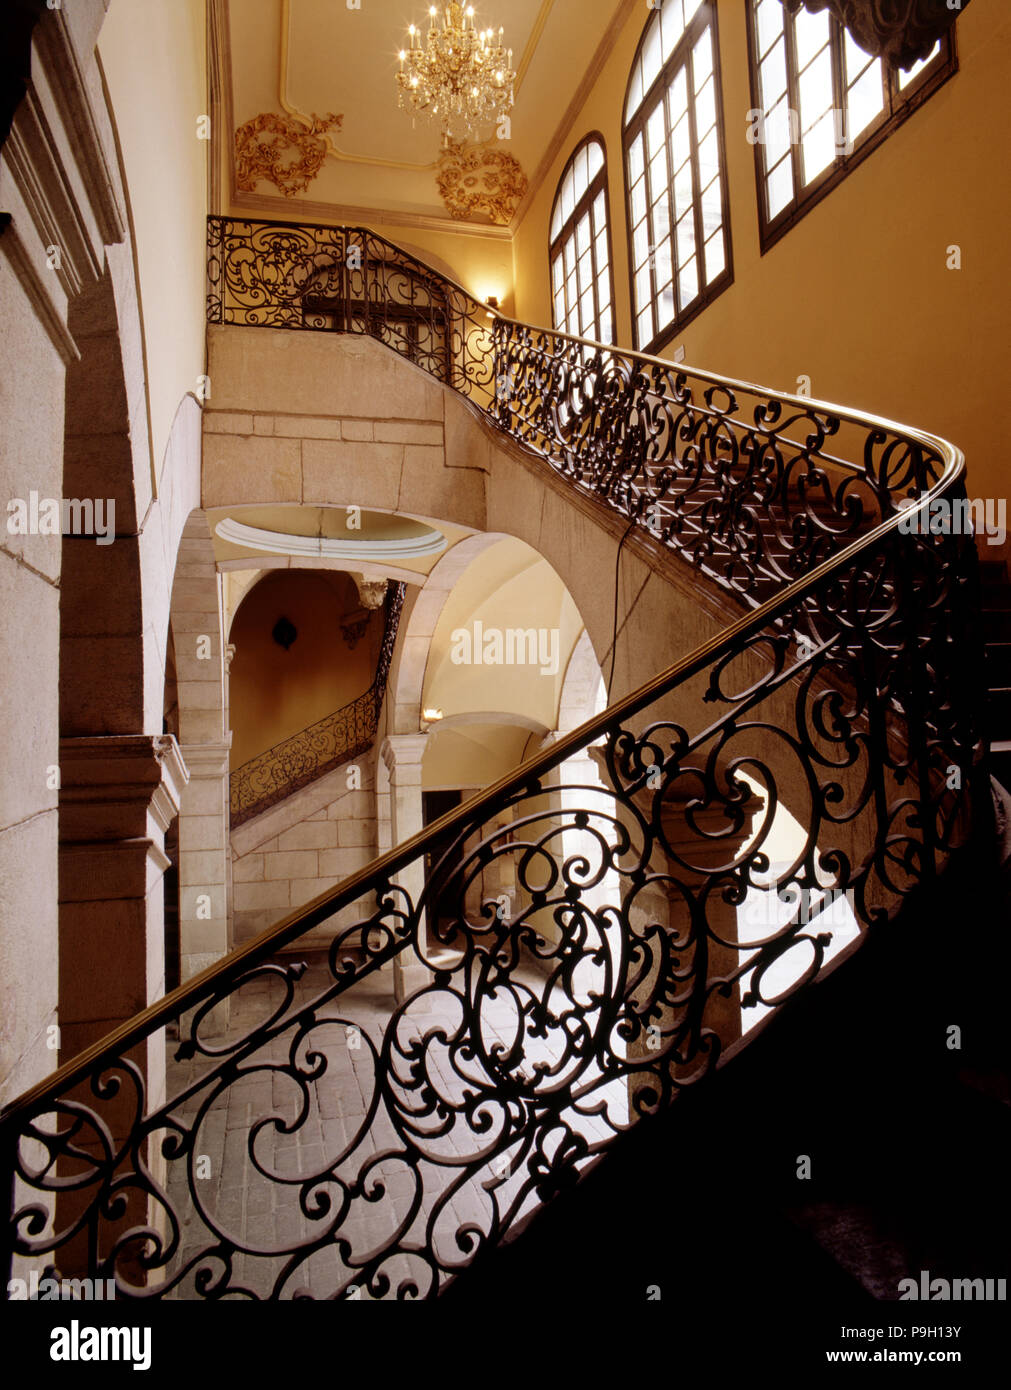 Escalier de la Virreina Palace à Barcelone, le travail réalisé par Carles Grau. Banque D'Images